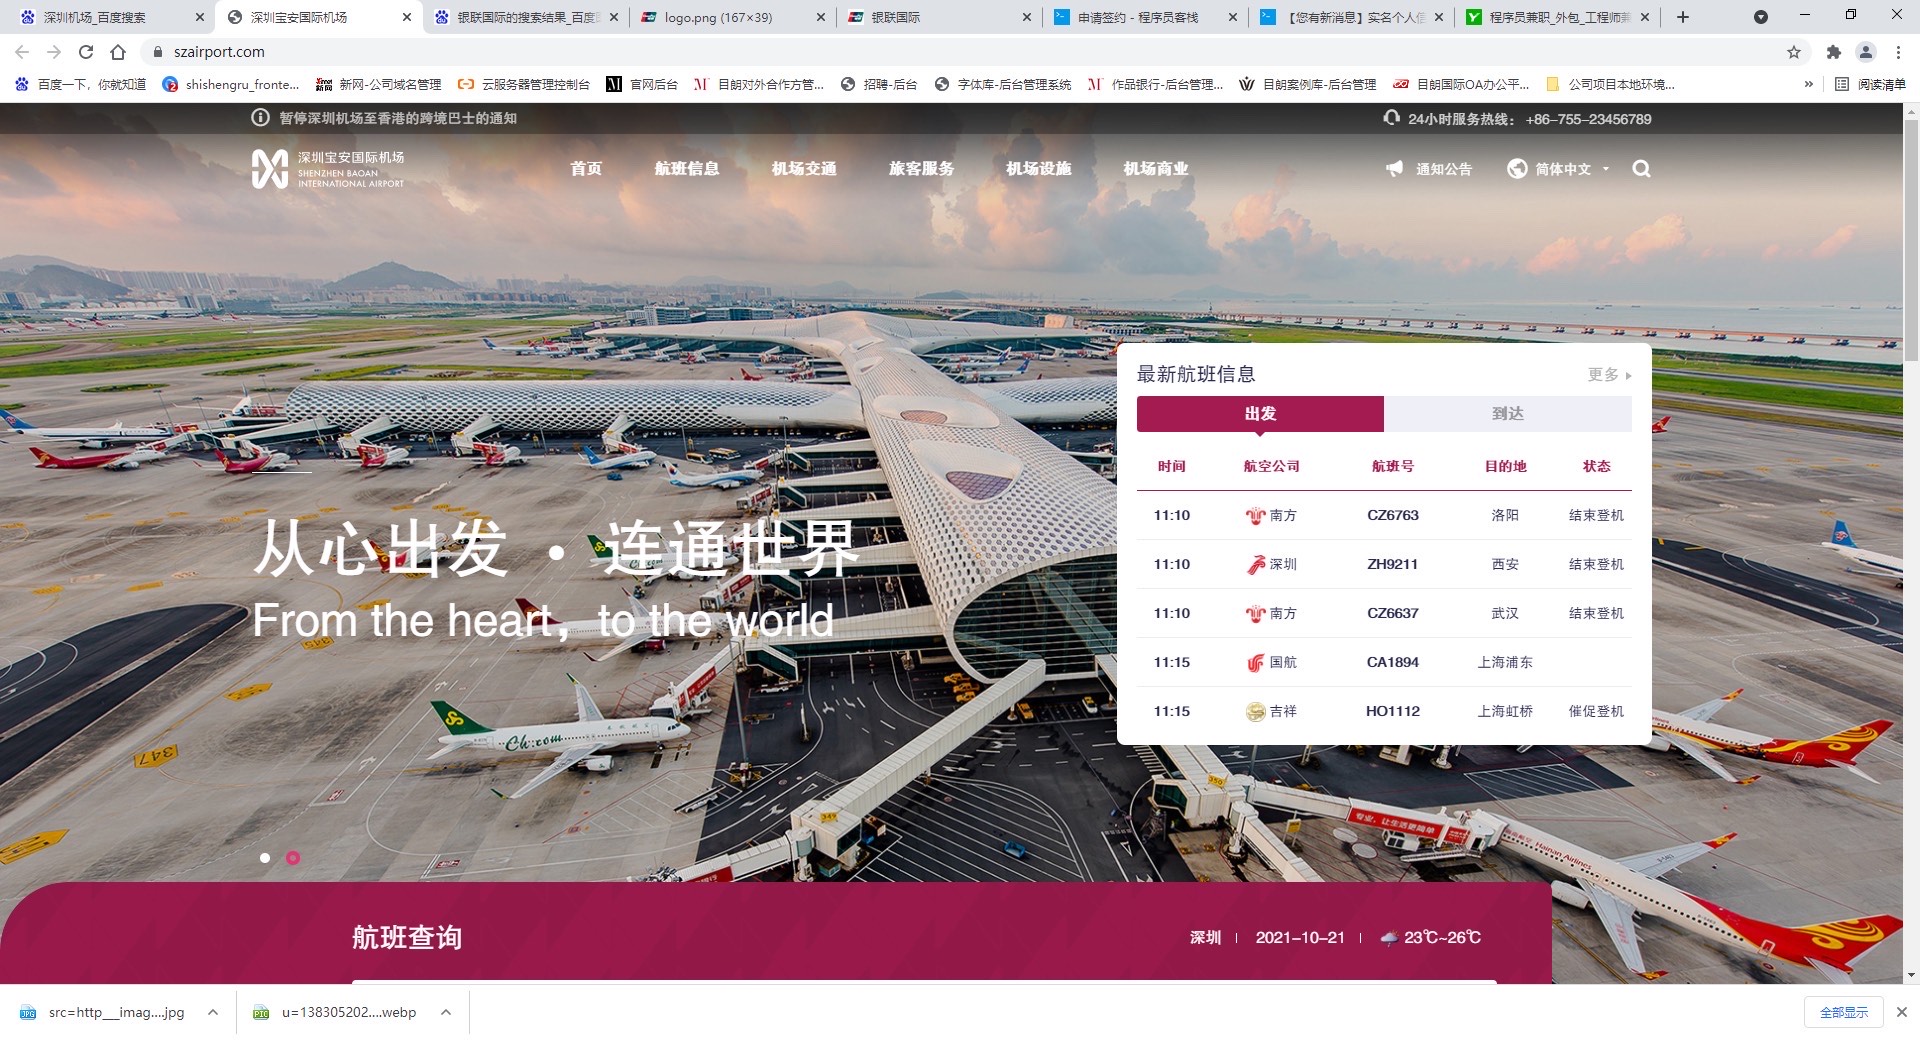 深圳宝安国际机场图片浏览-深圳宝安国际机场图片下载 - 酷吧图库